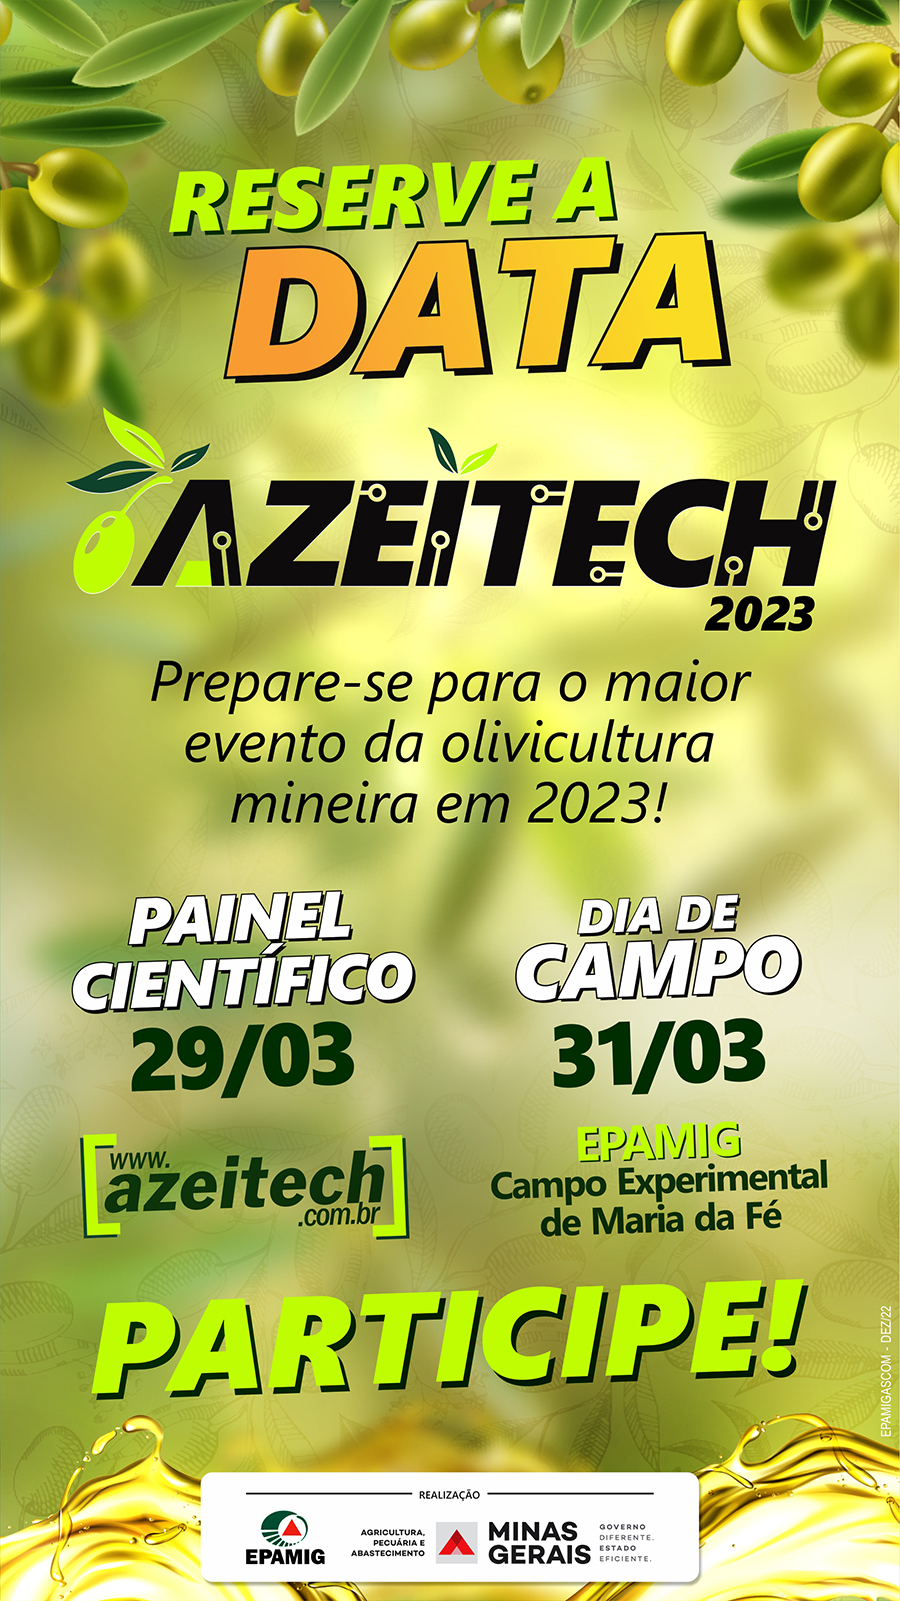 Azeitech 2023 - Reserve a data